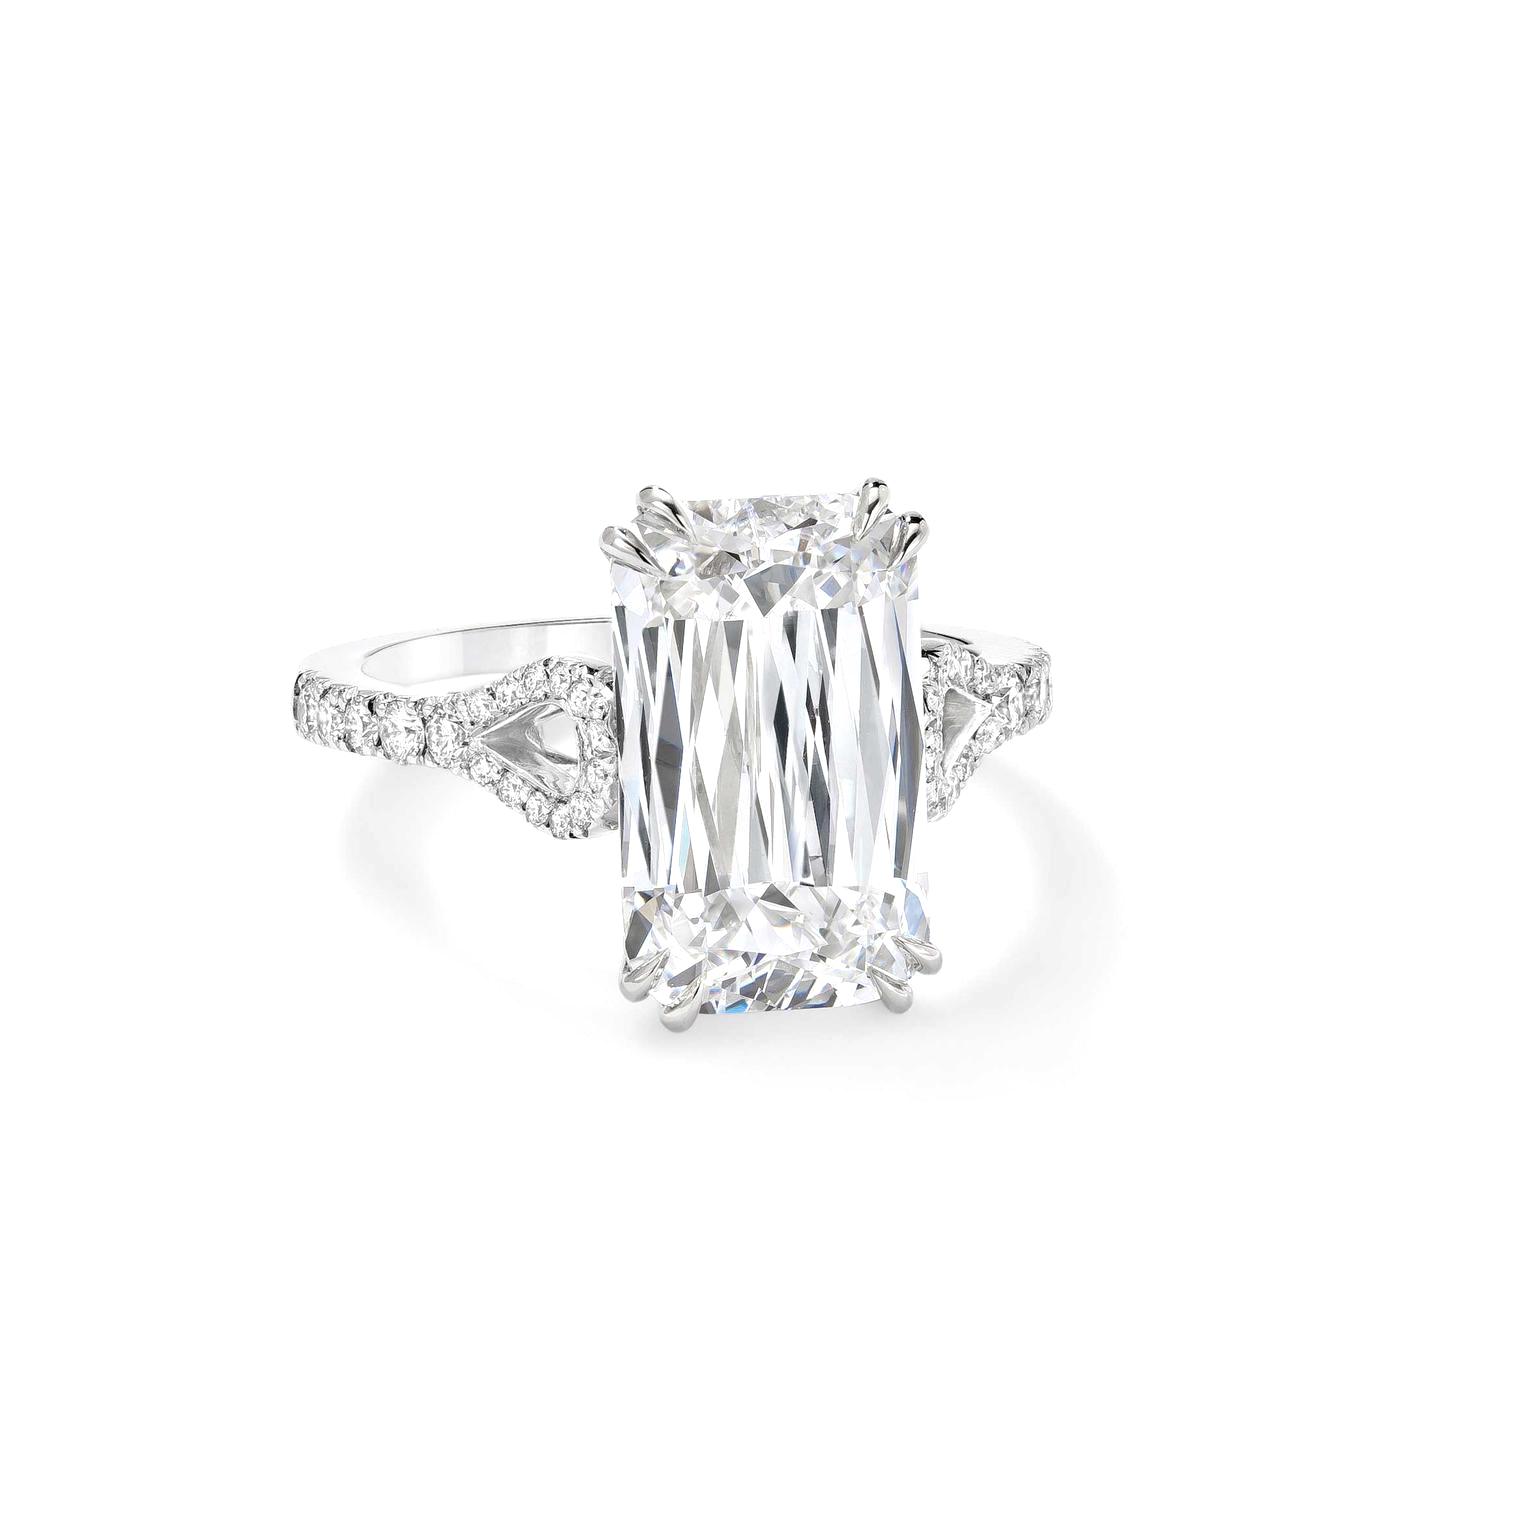 Ashoka Diamond Engagement Ring with Pave | Shreve & Co.